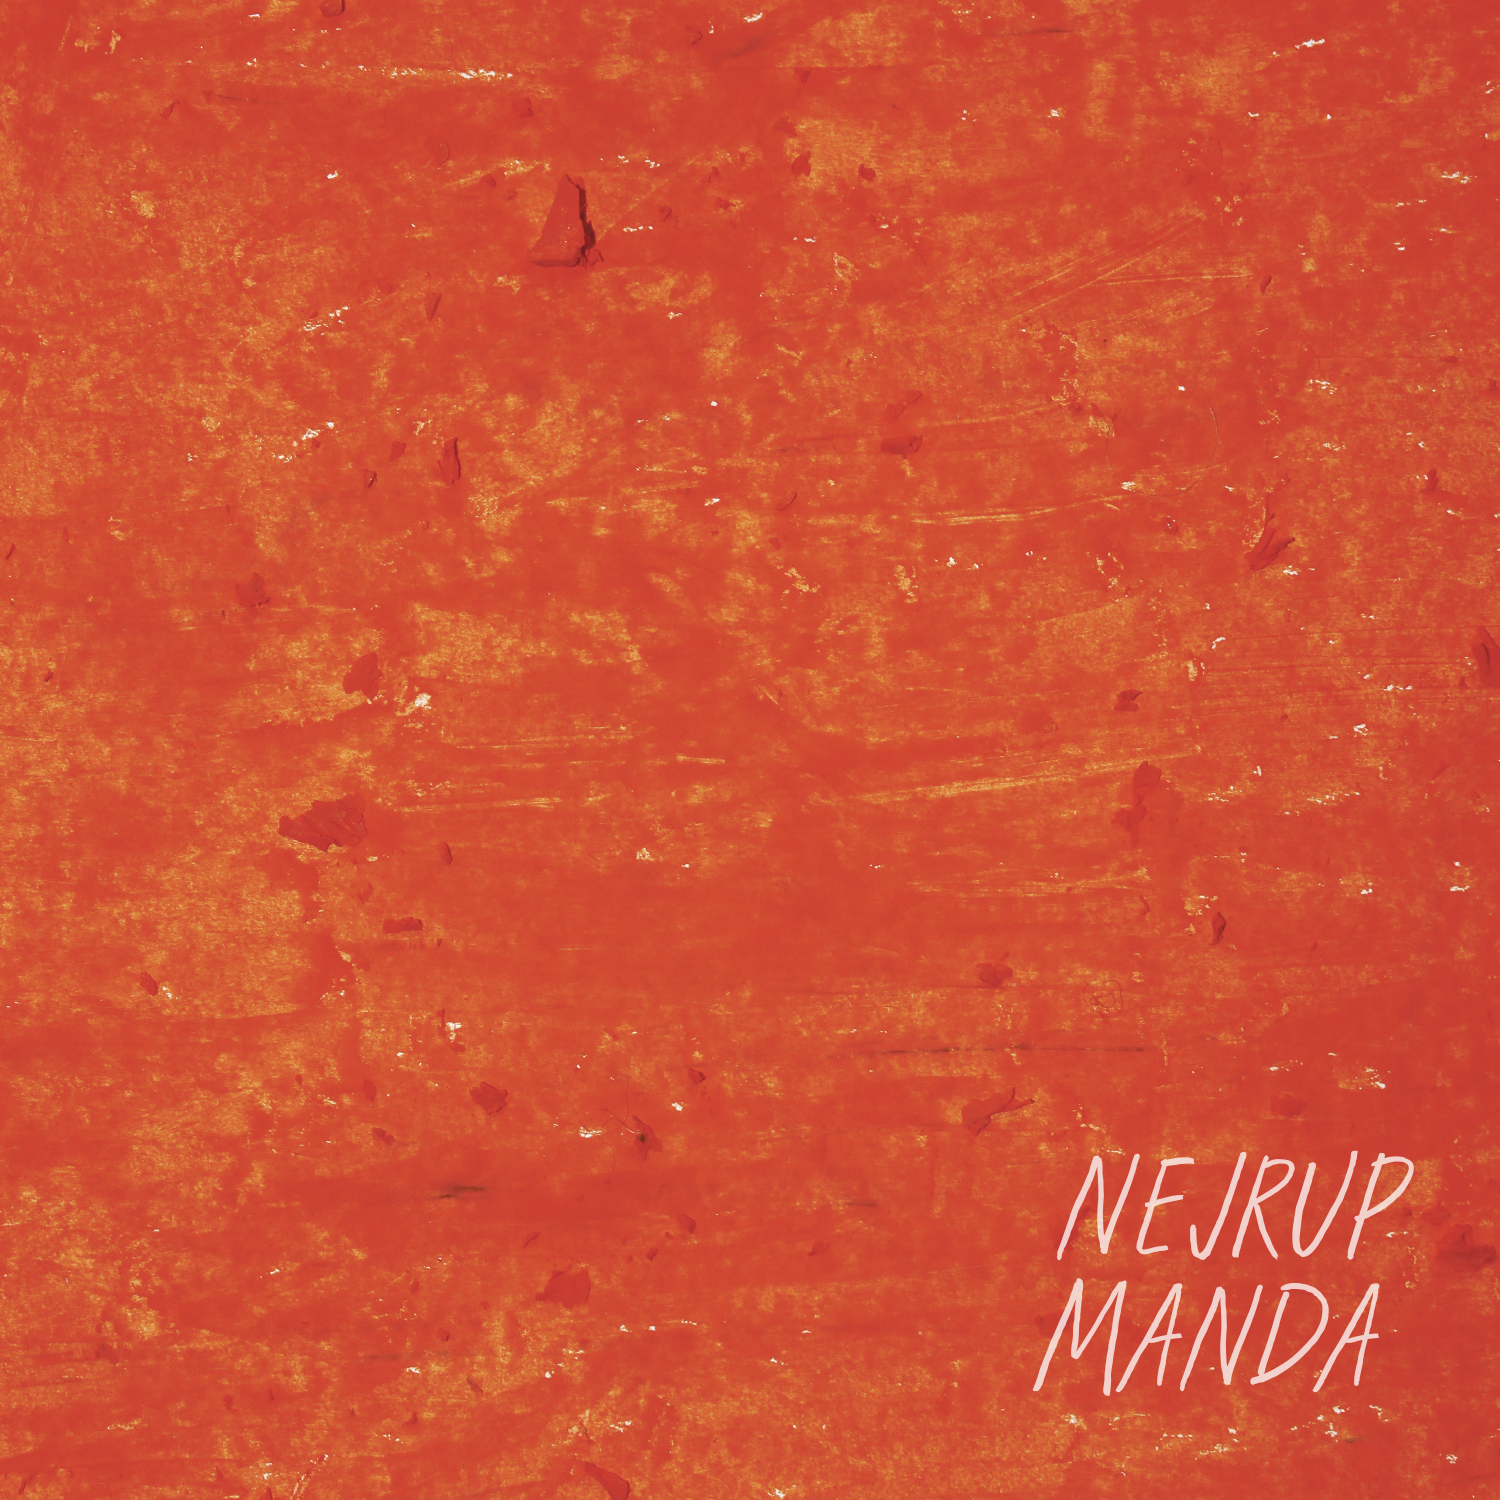 Nejrup/MANDA EP (K15 REMIX) 12"